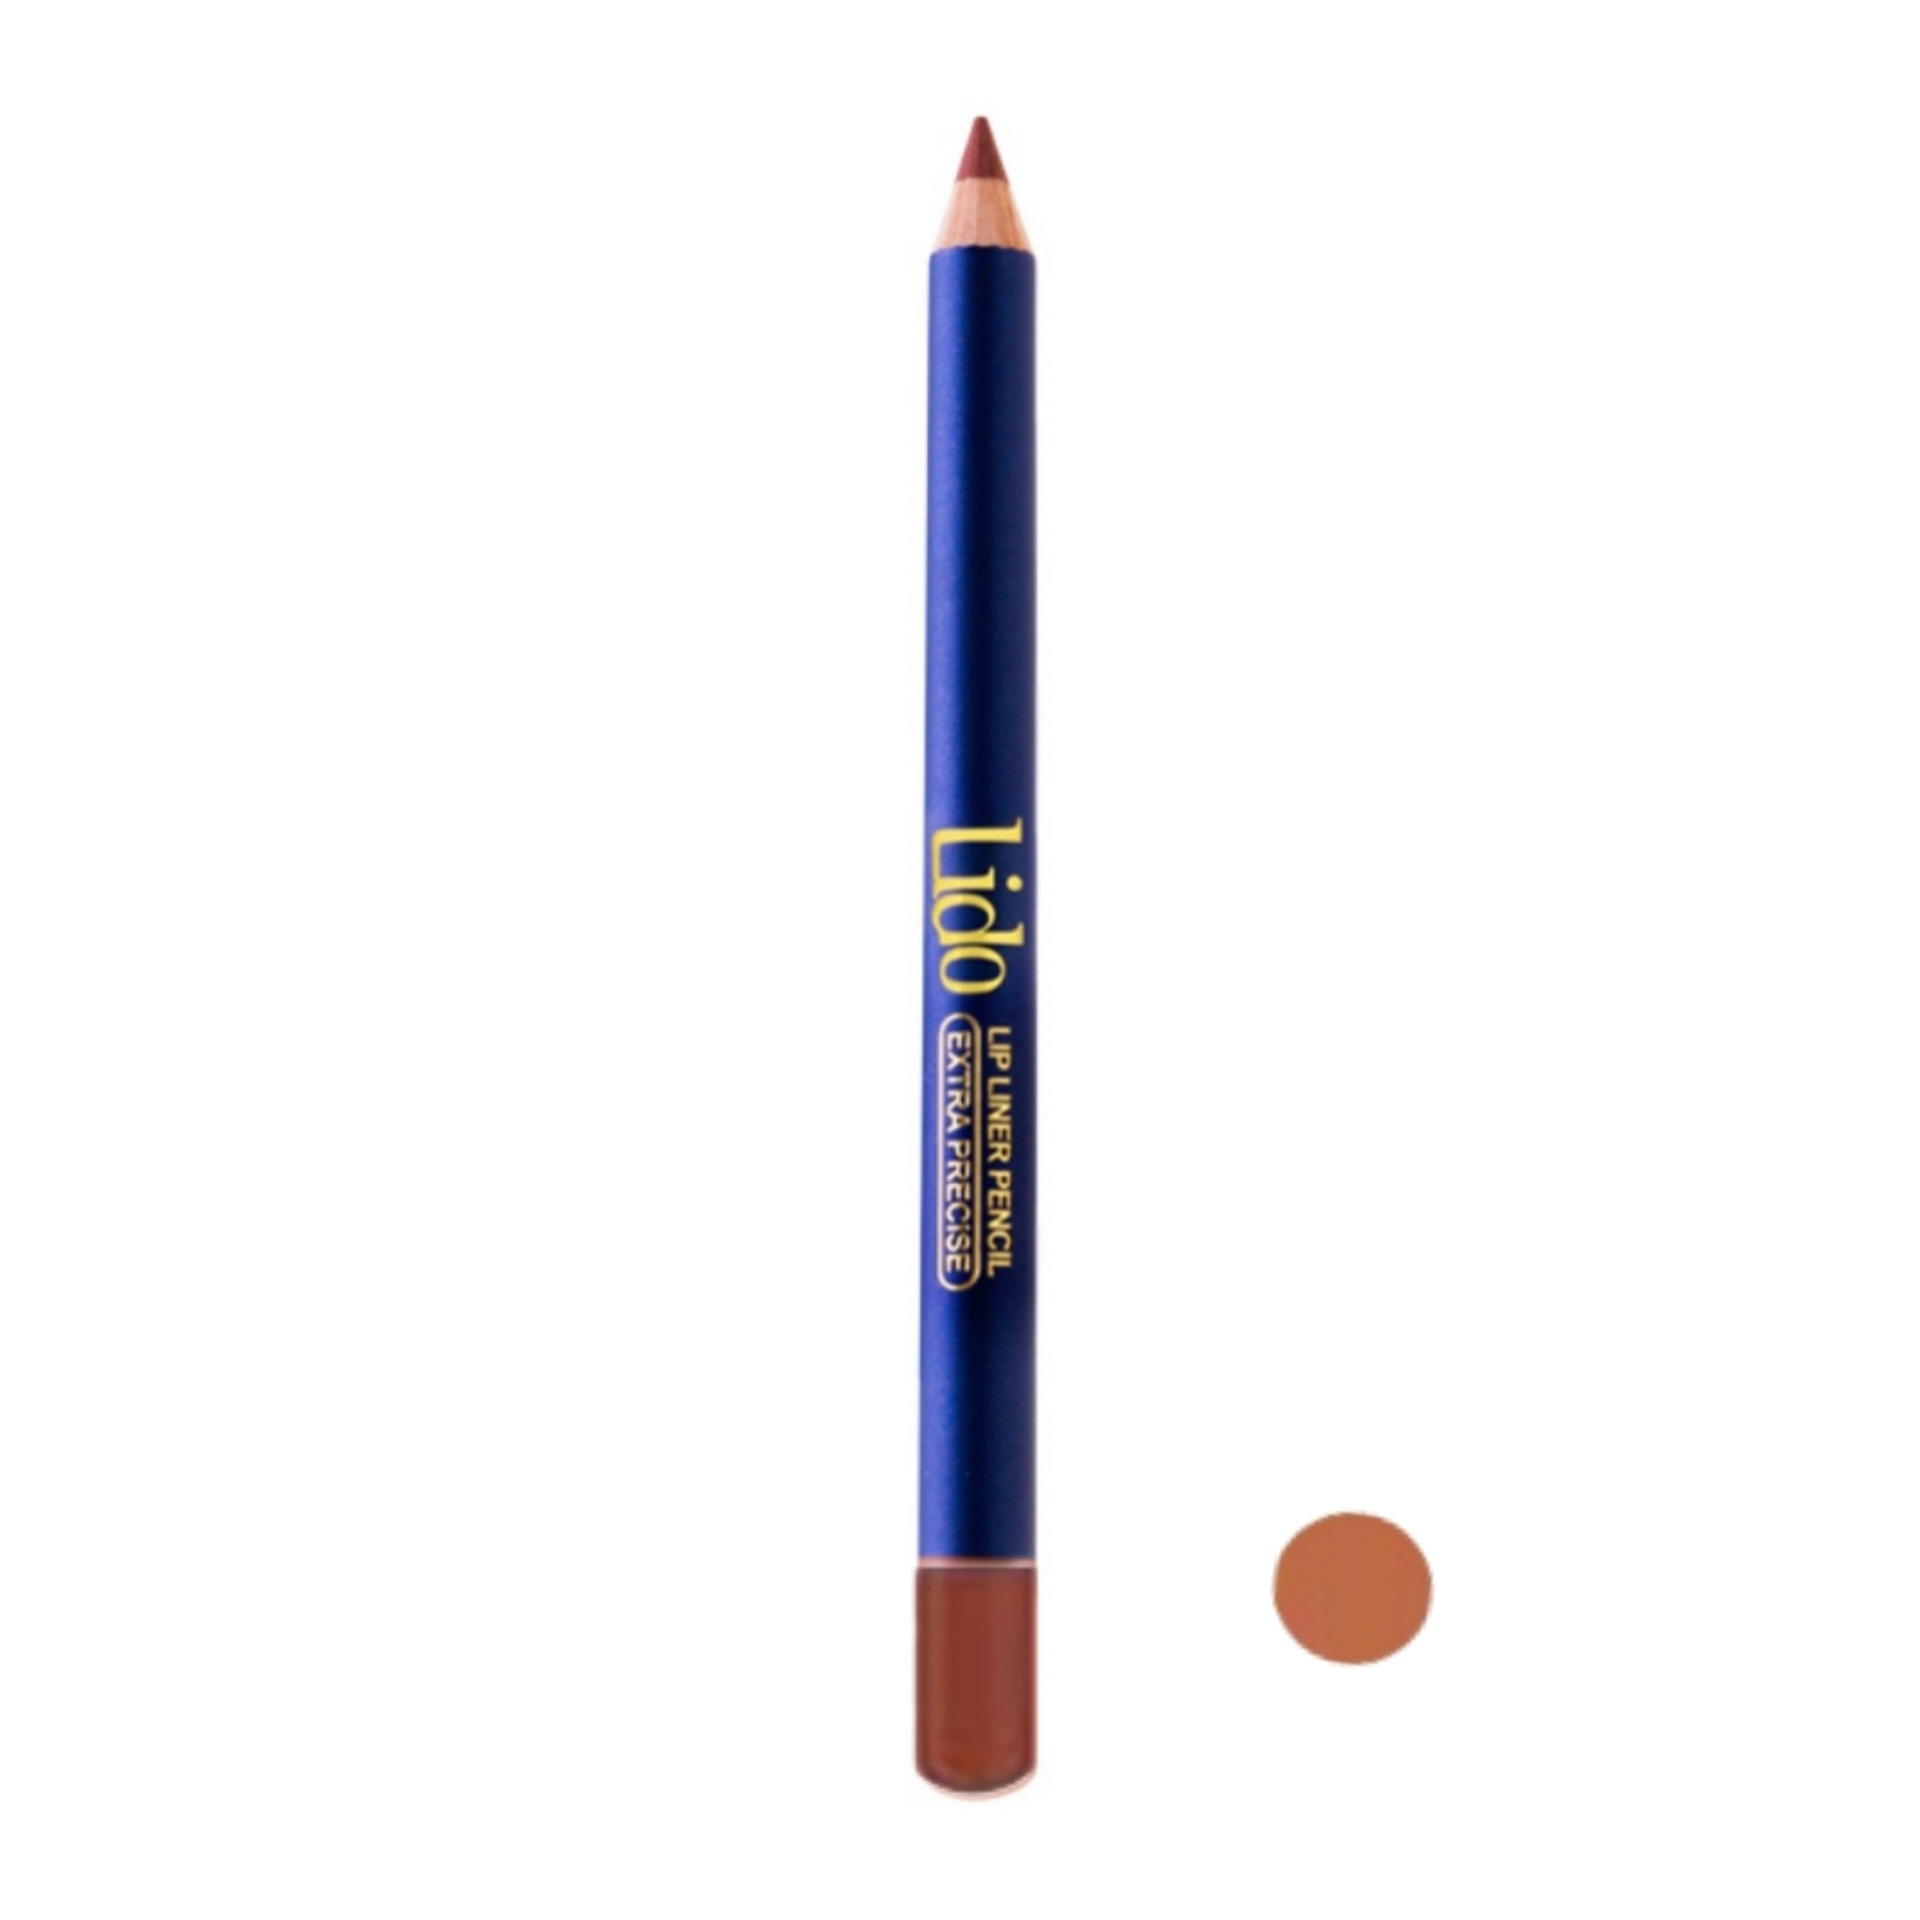 مداد لب لیدو مدل Extra precise شماره 502